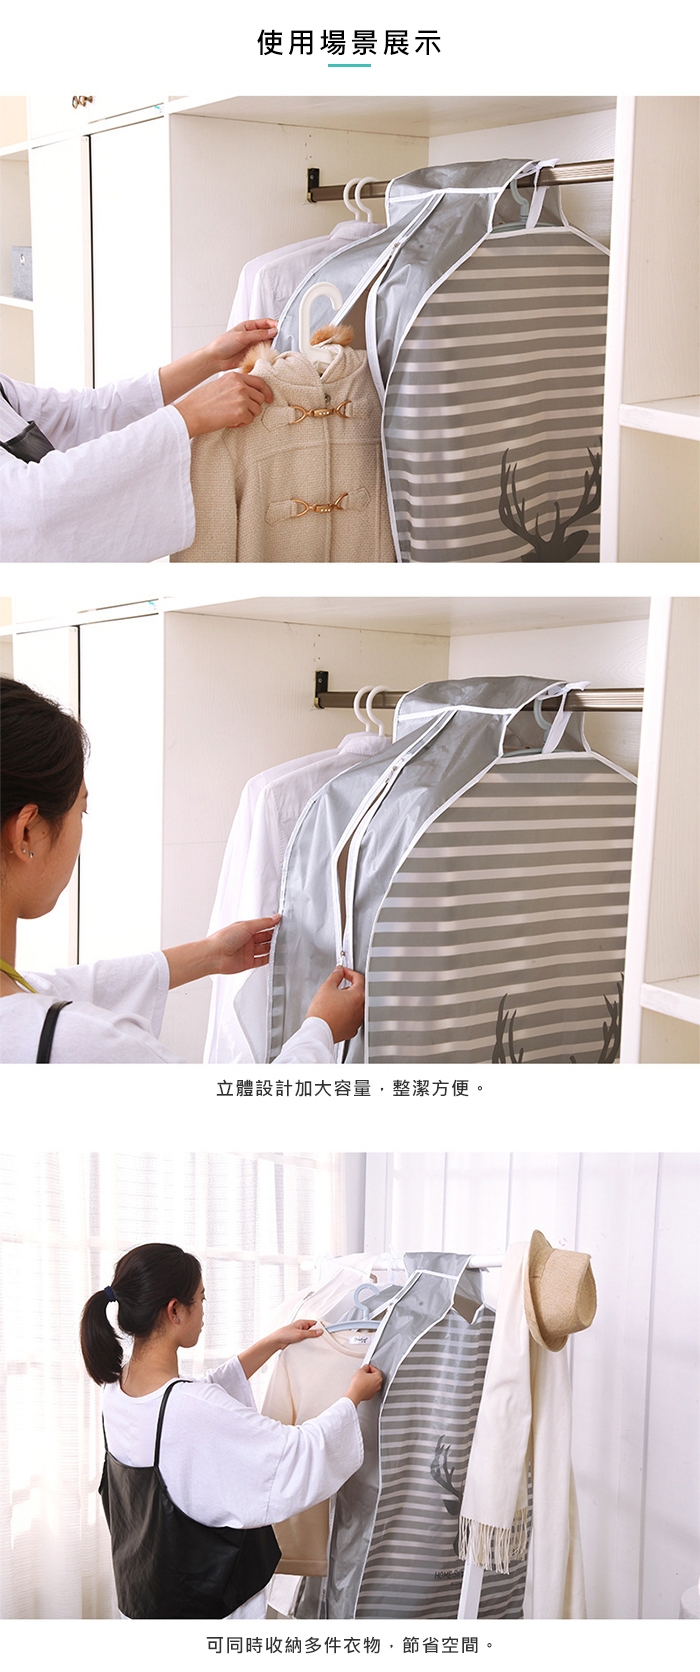 JoyNa【3件入】衣服防塵罩袋 掛式衣櫃透明衣物整理收納袋